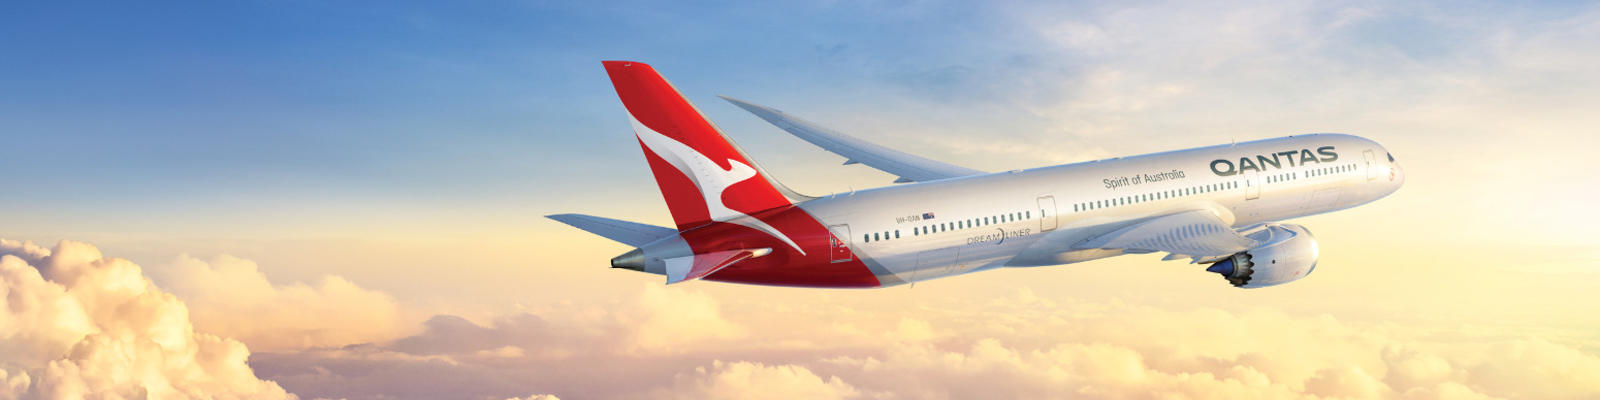 The Qantas Dreamliner flies through the clouds.